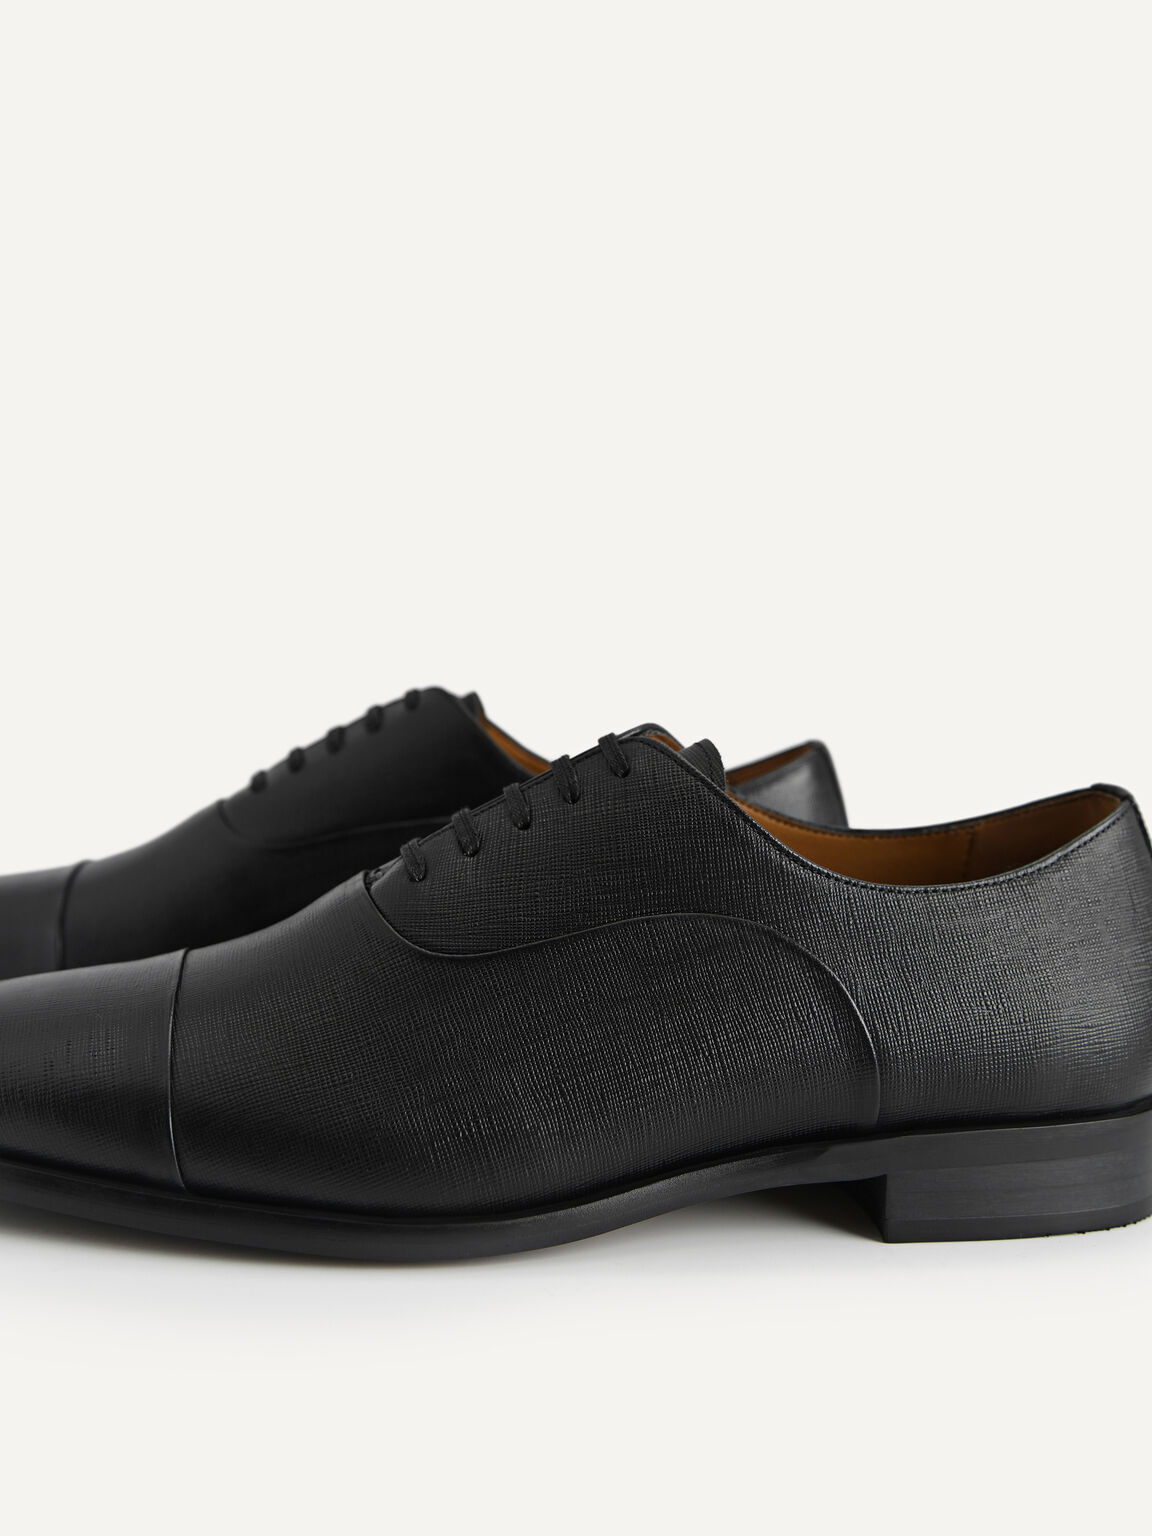 紋理皮革牛津鞋, 黑色